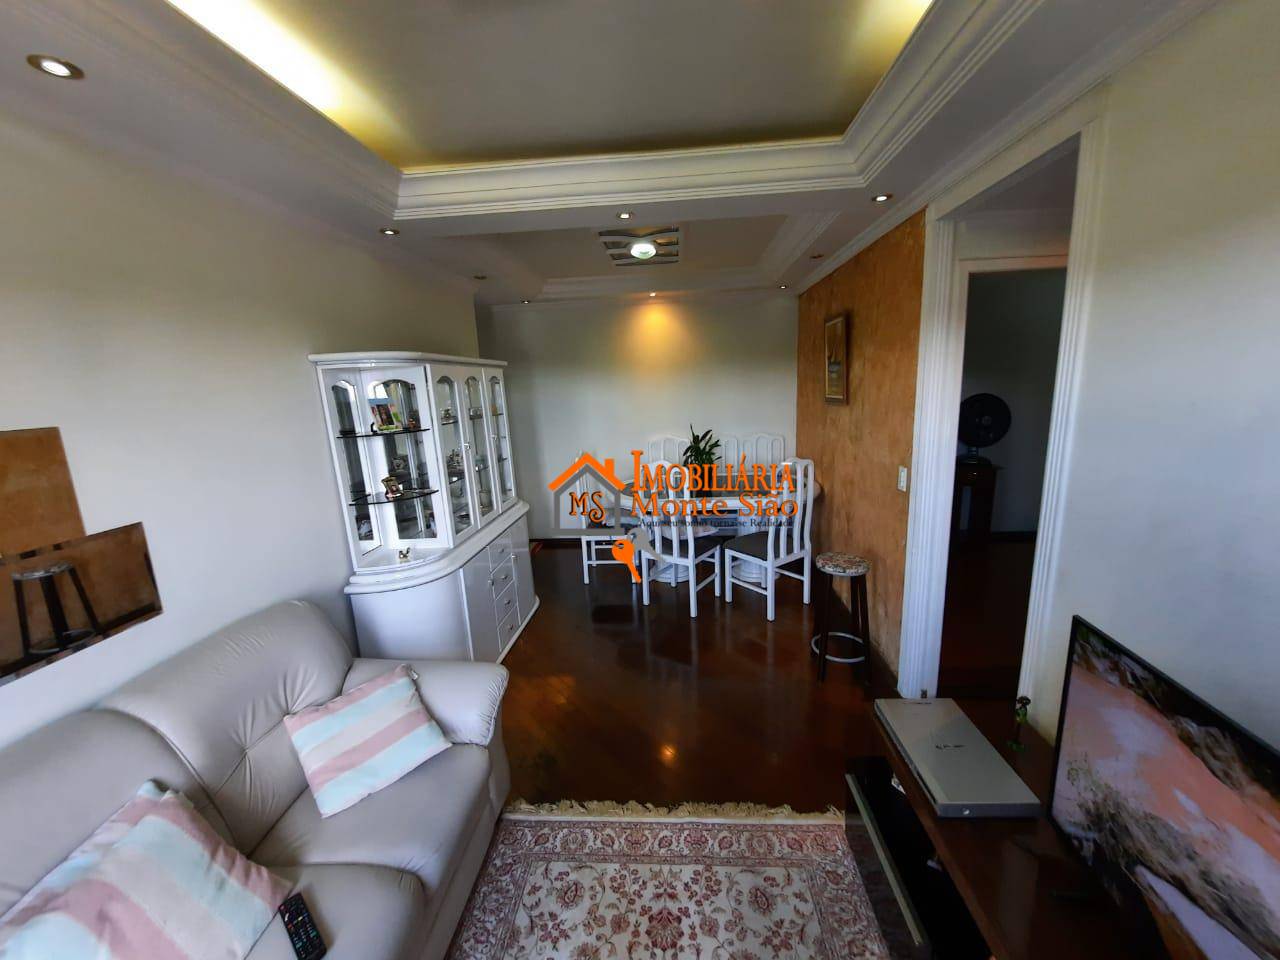 Apartamento residencial Phenix V com 02 dormitórios à venda, 61 m² por R$ 290.000 - Vila Imaculada - Guarulhos/SP